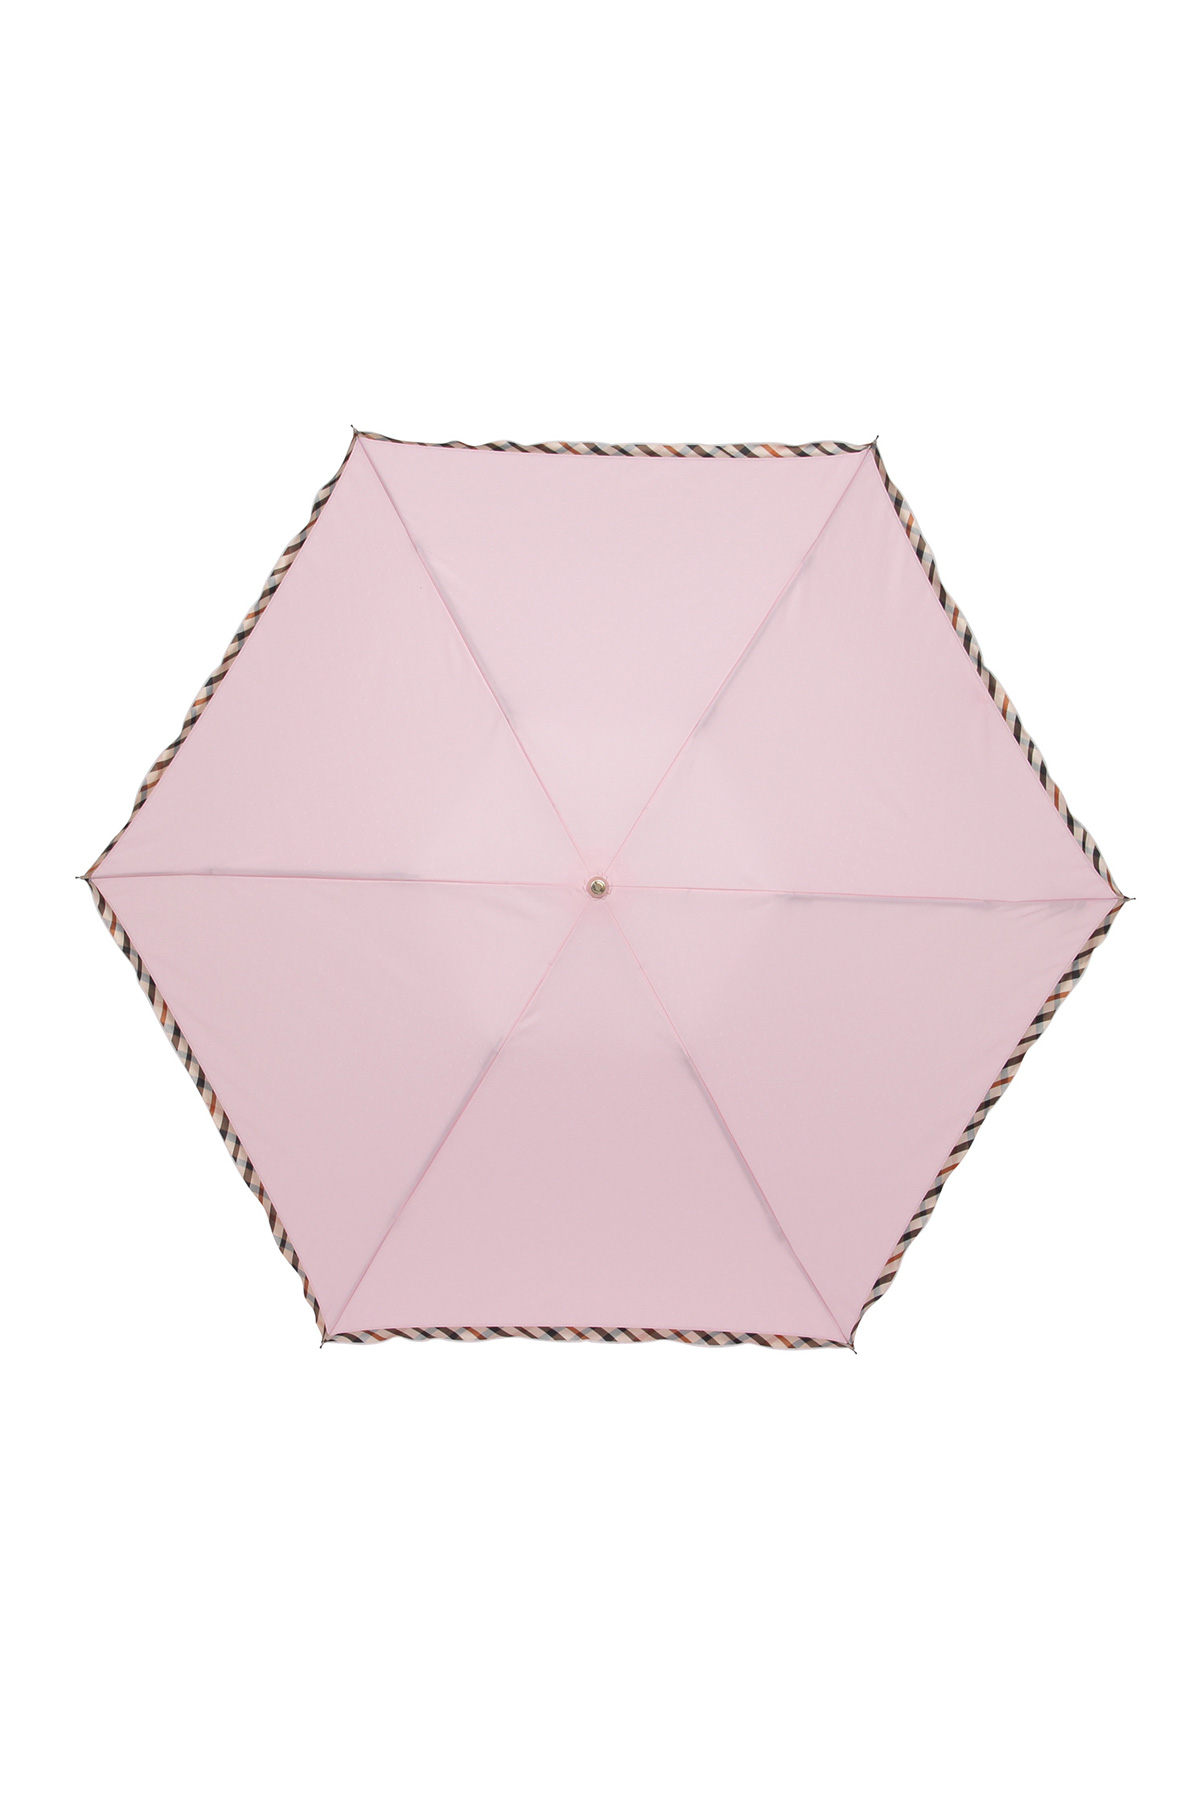 【雨傘】折りたたみ傘ドビーフリル 詳細画像 6